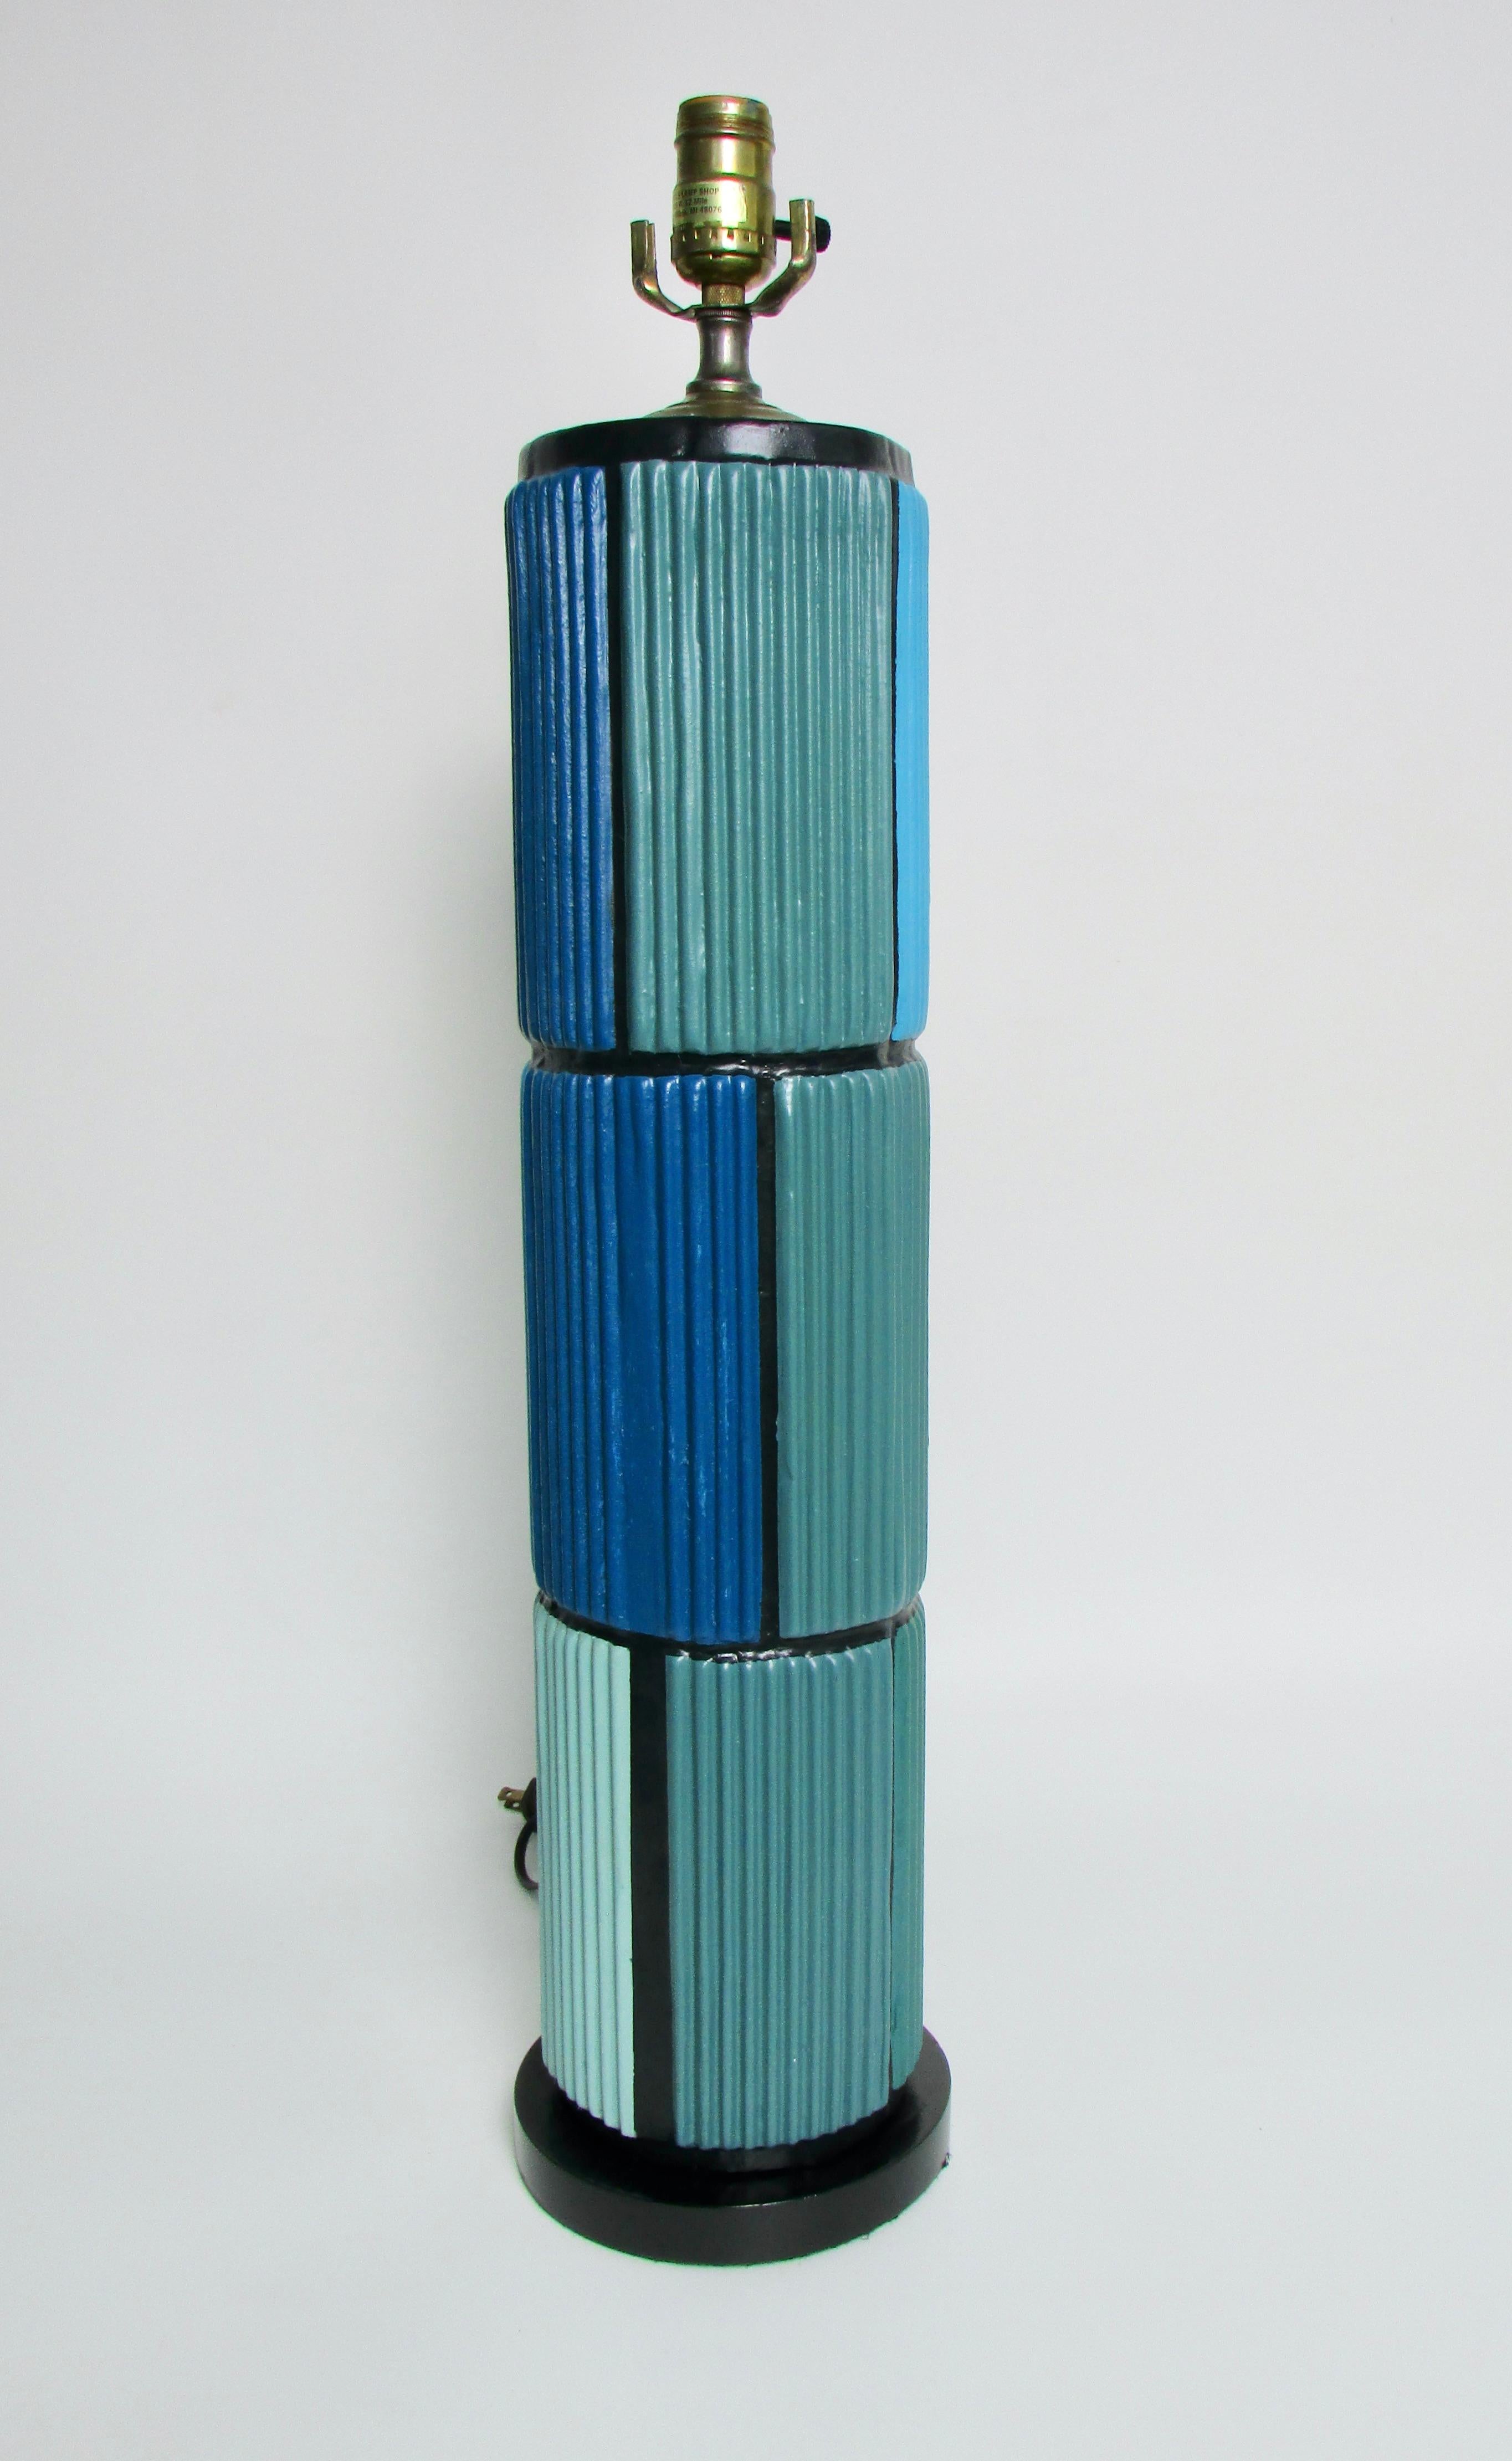 Lampe de table cylindrique haute . Peint dans le style Mondrian dans des tons de bleu . La base a un diamètre de 6,5